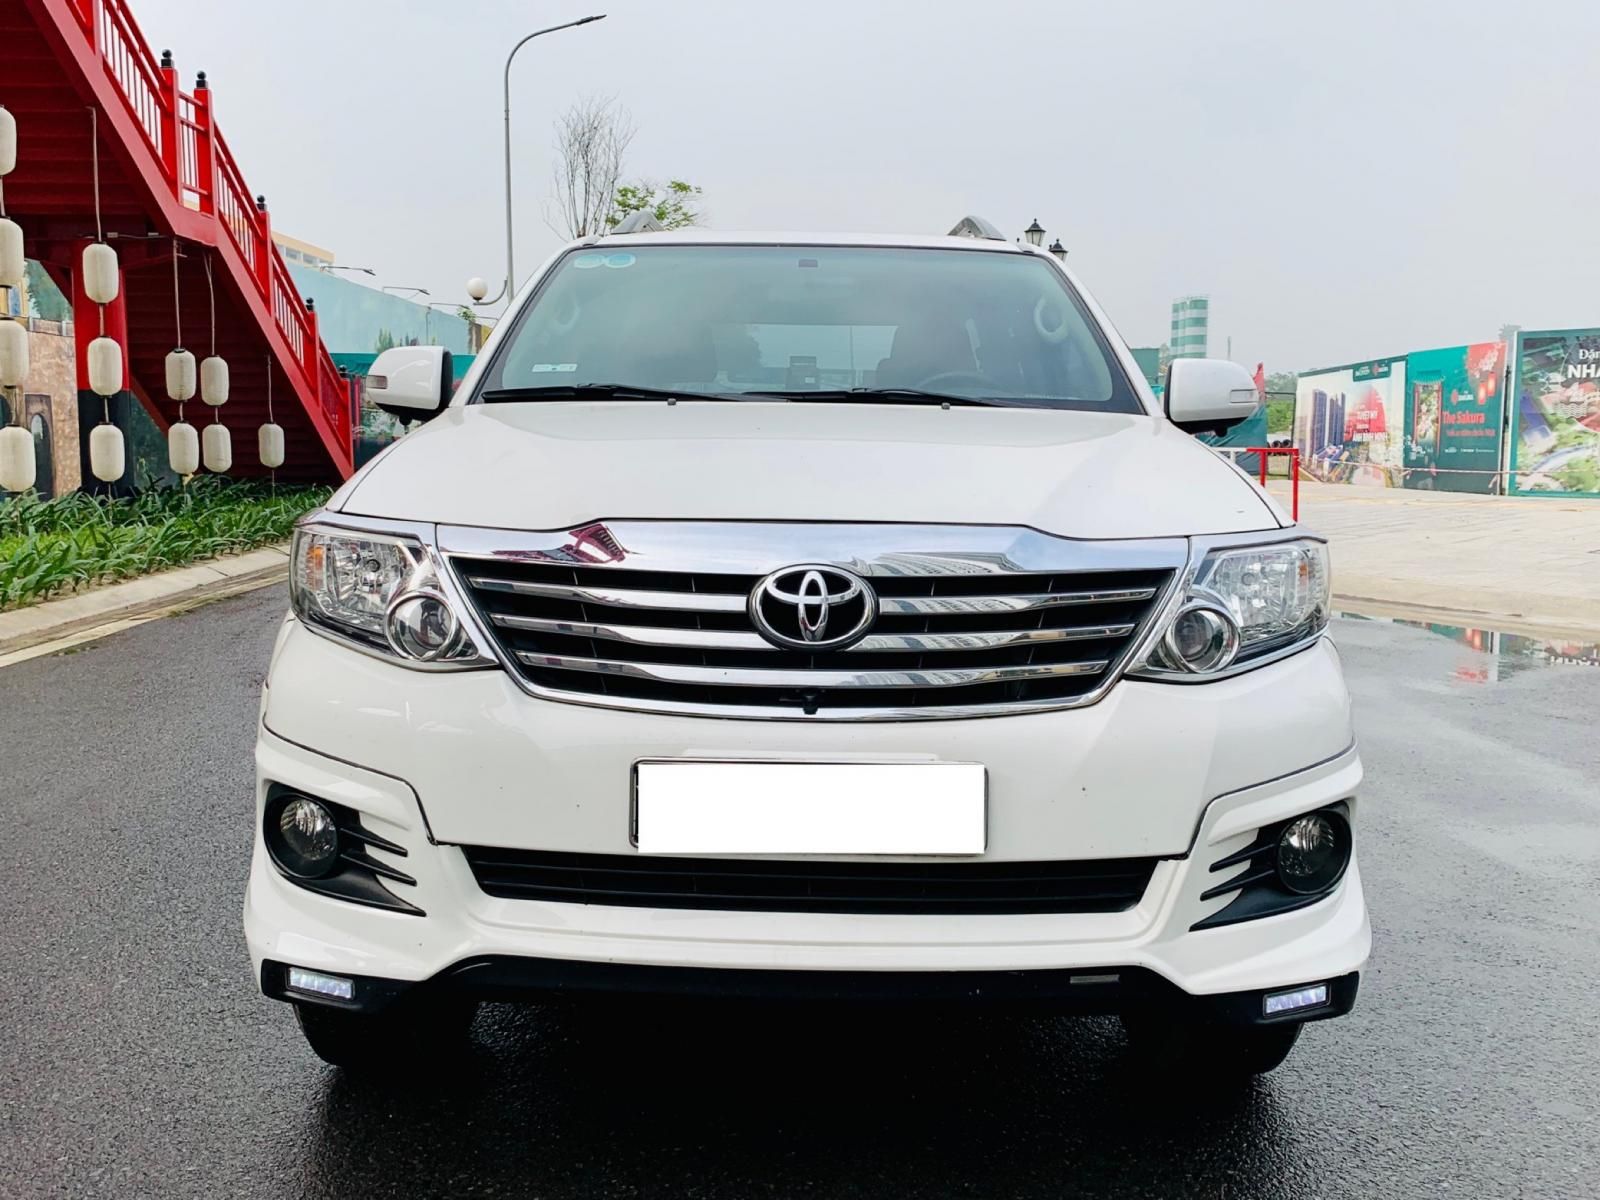 Đánh giá xe Toyota Fortuner 2016 kèm thông số kỹ thuật và hình ảnh   MuasamXecom